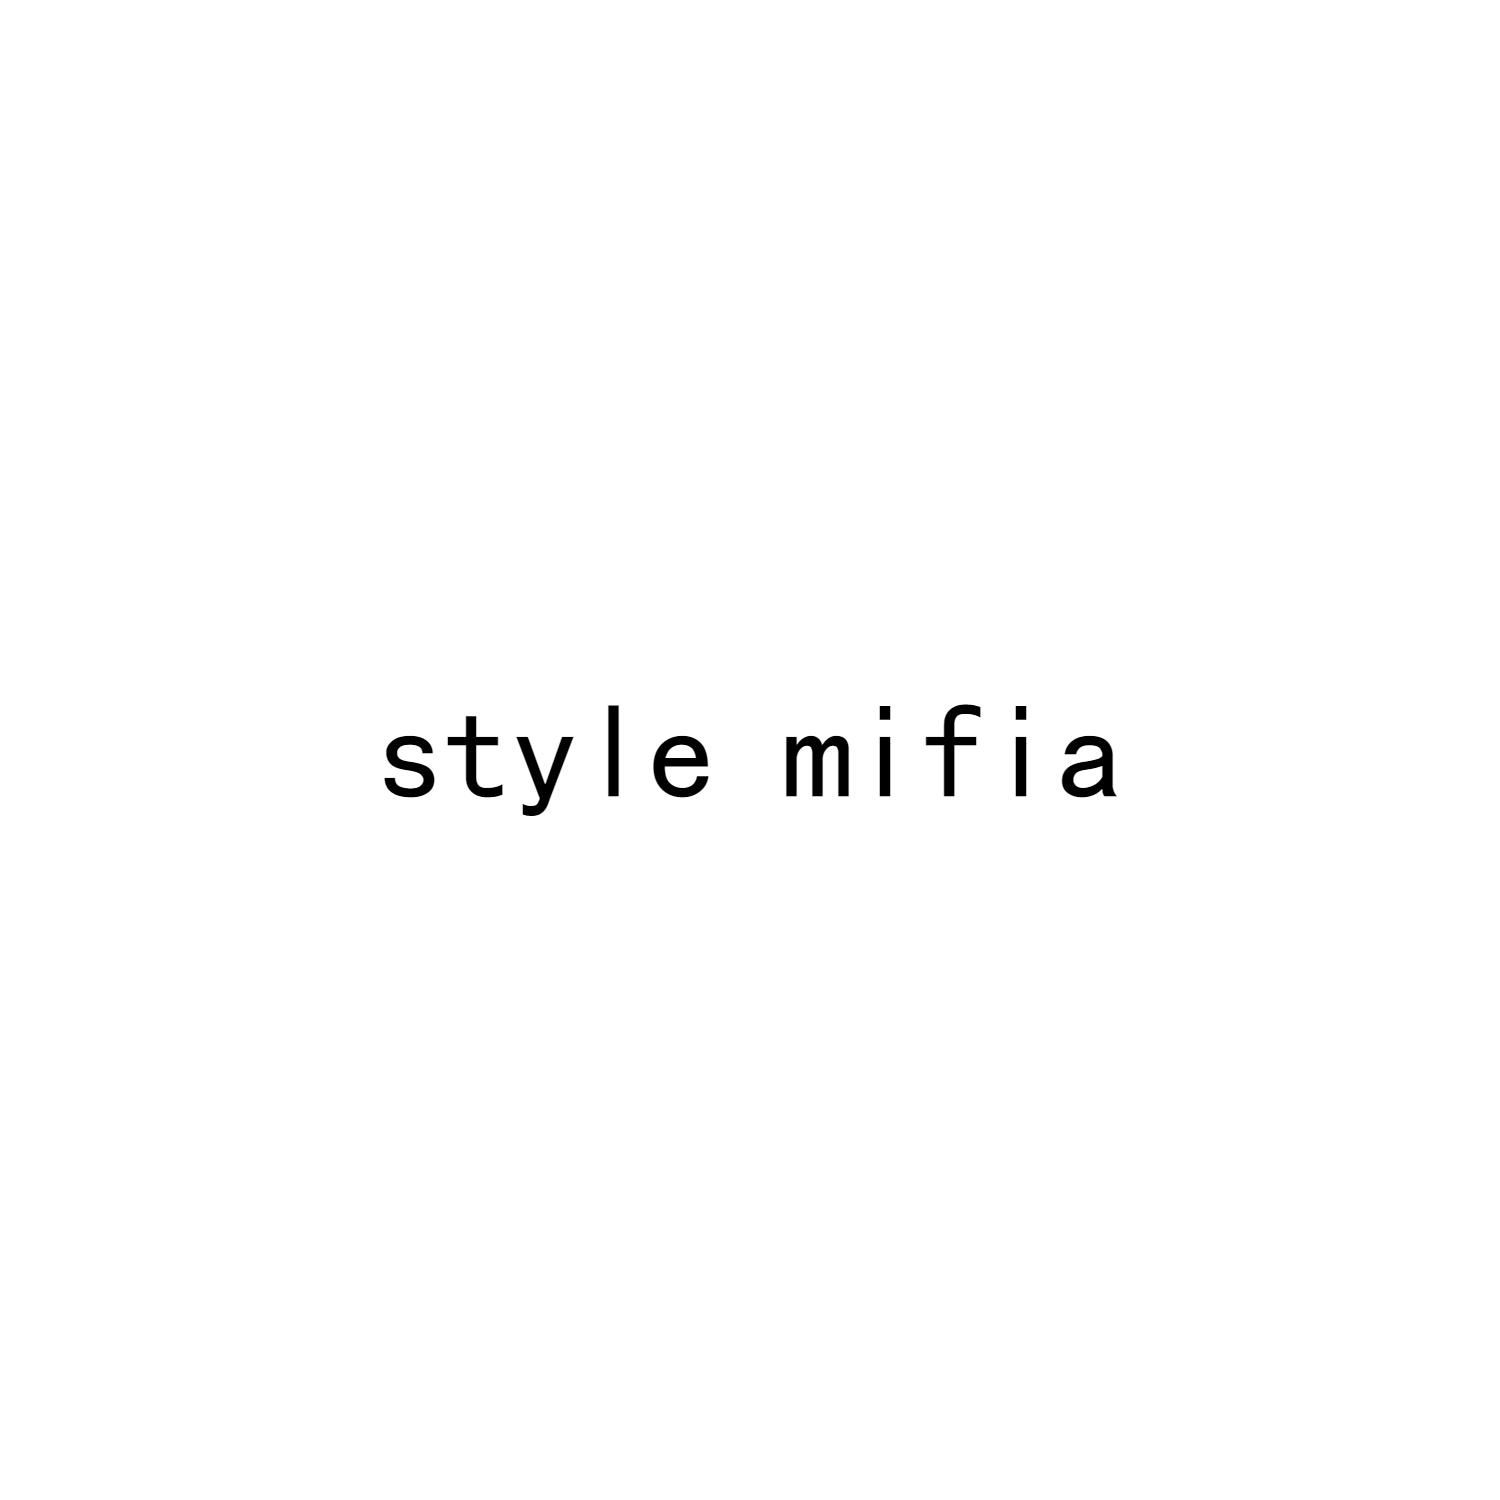 style mifia